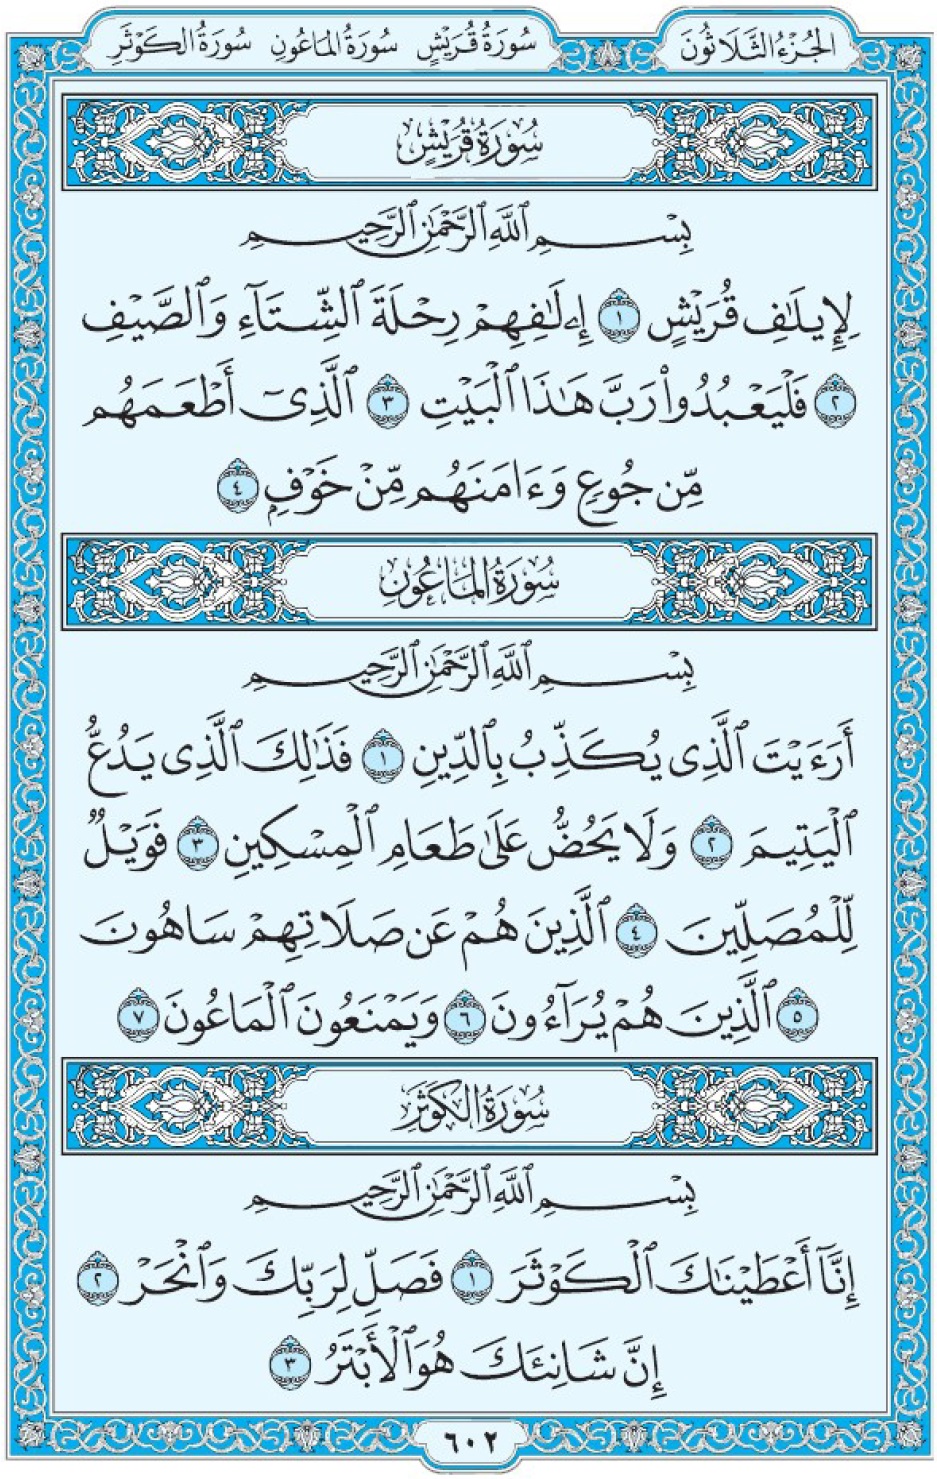 Коран Мединский мусхаф страница 602, суры 106 Курайш, 107 аль-Маун, 108 аль-Кяусар